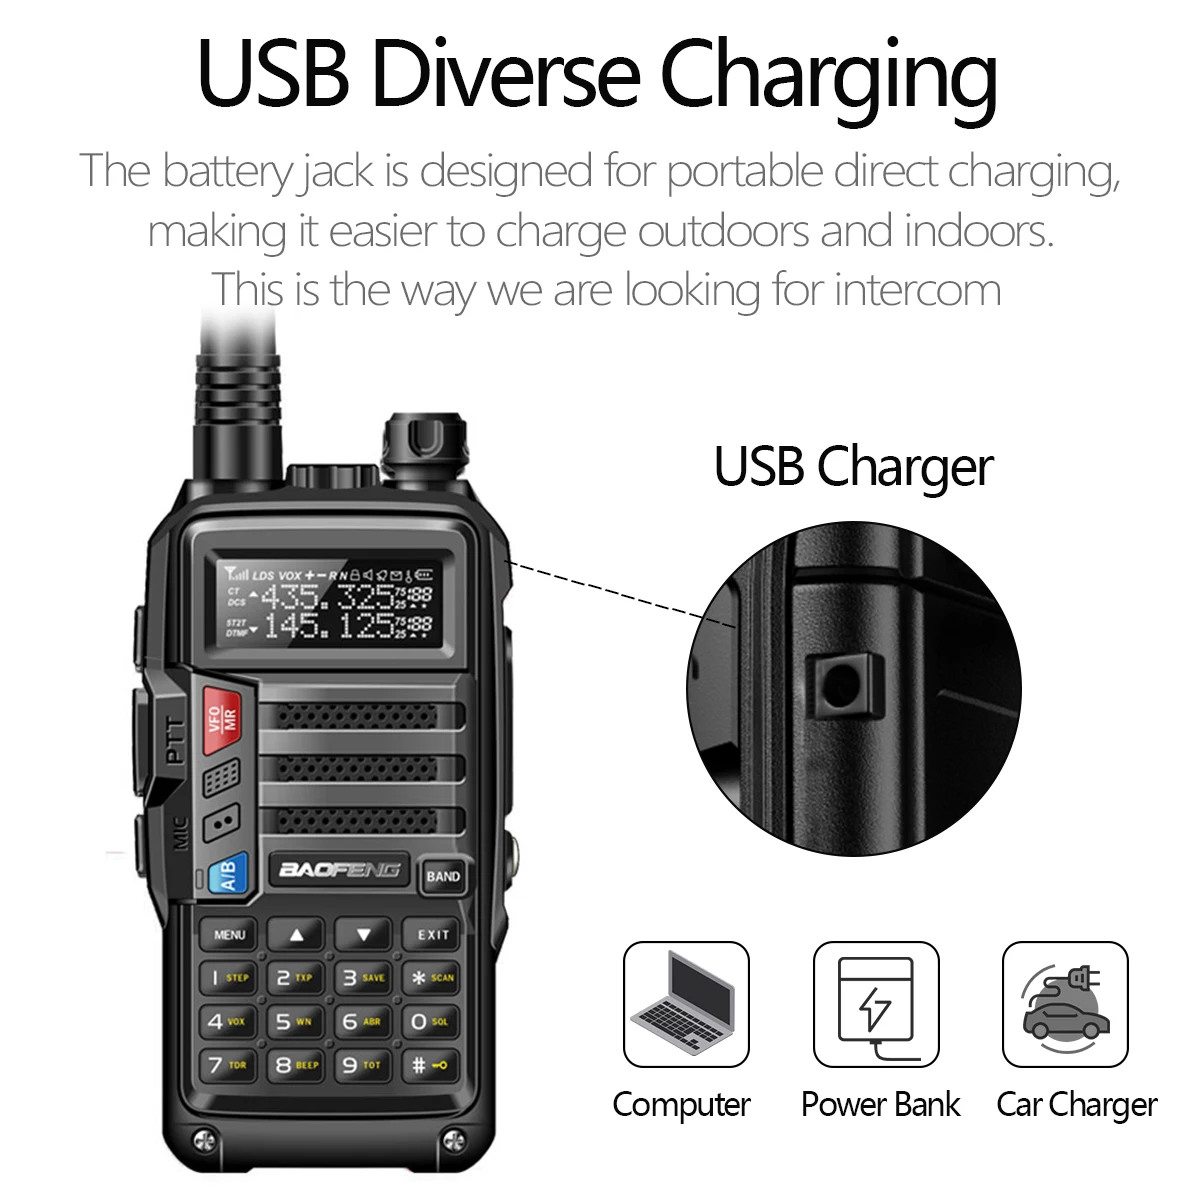 BAOFENG UV-5R Plus 15W Walkie talkie USB Nabíjačka 16 KM Dlhý Rozsah Vysielača VHF UHF Ham Rádio UV 5R obojsmerné Rádiové pre lov